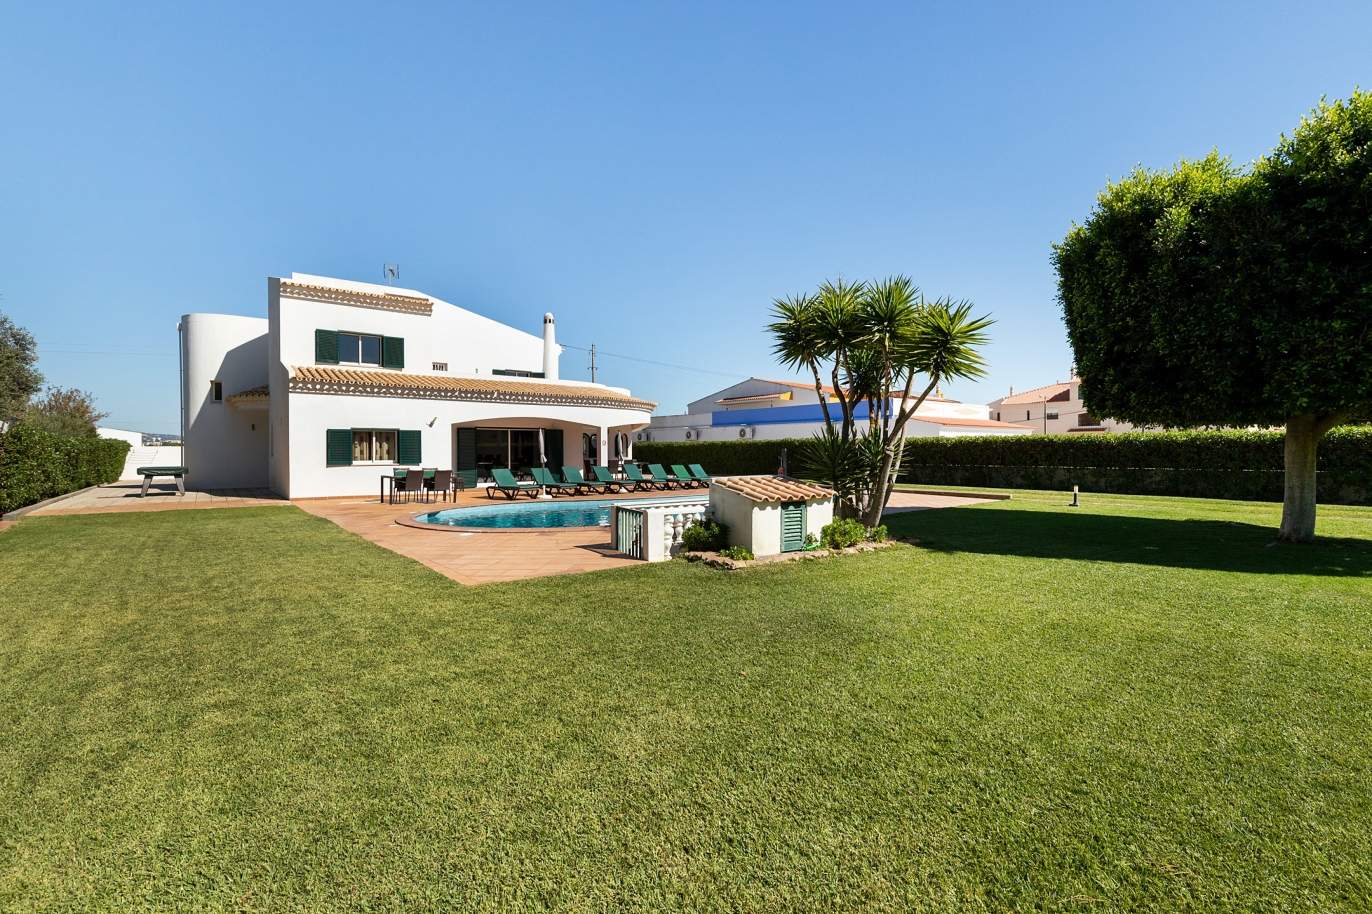 Moradia V4, com piscina e jardim, Albufeira, Algarve_180585